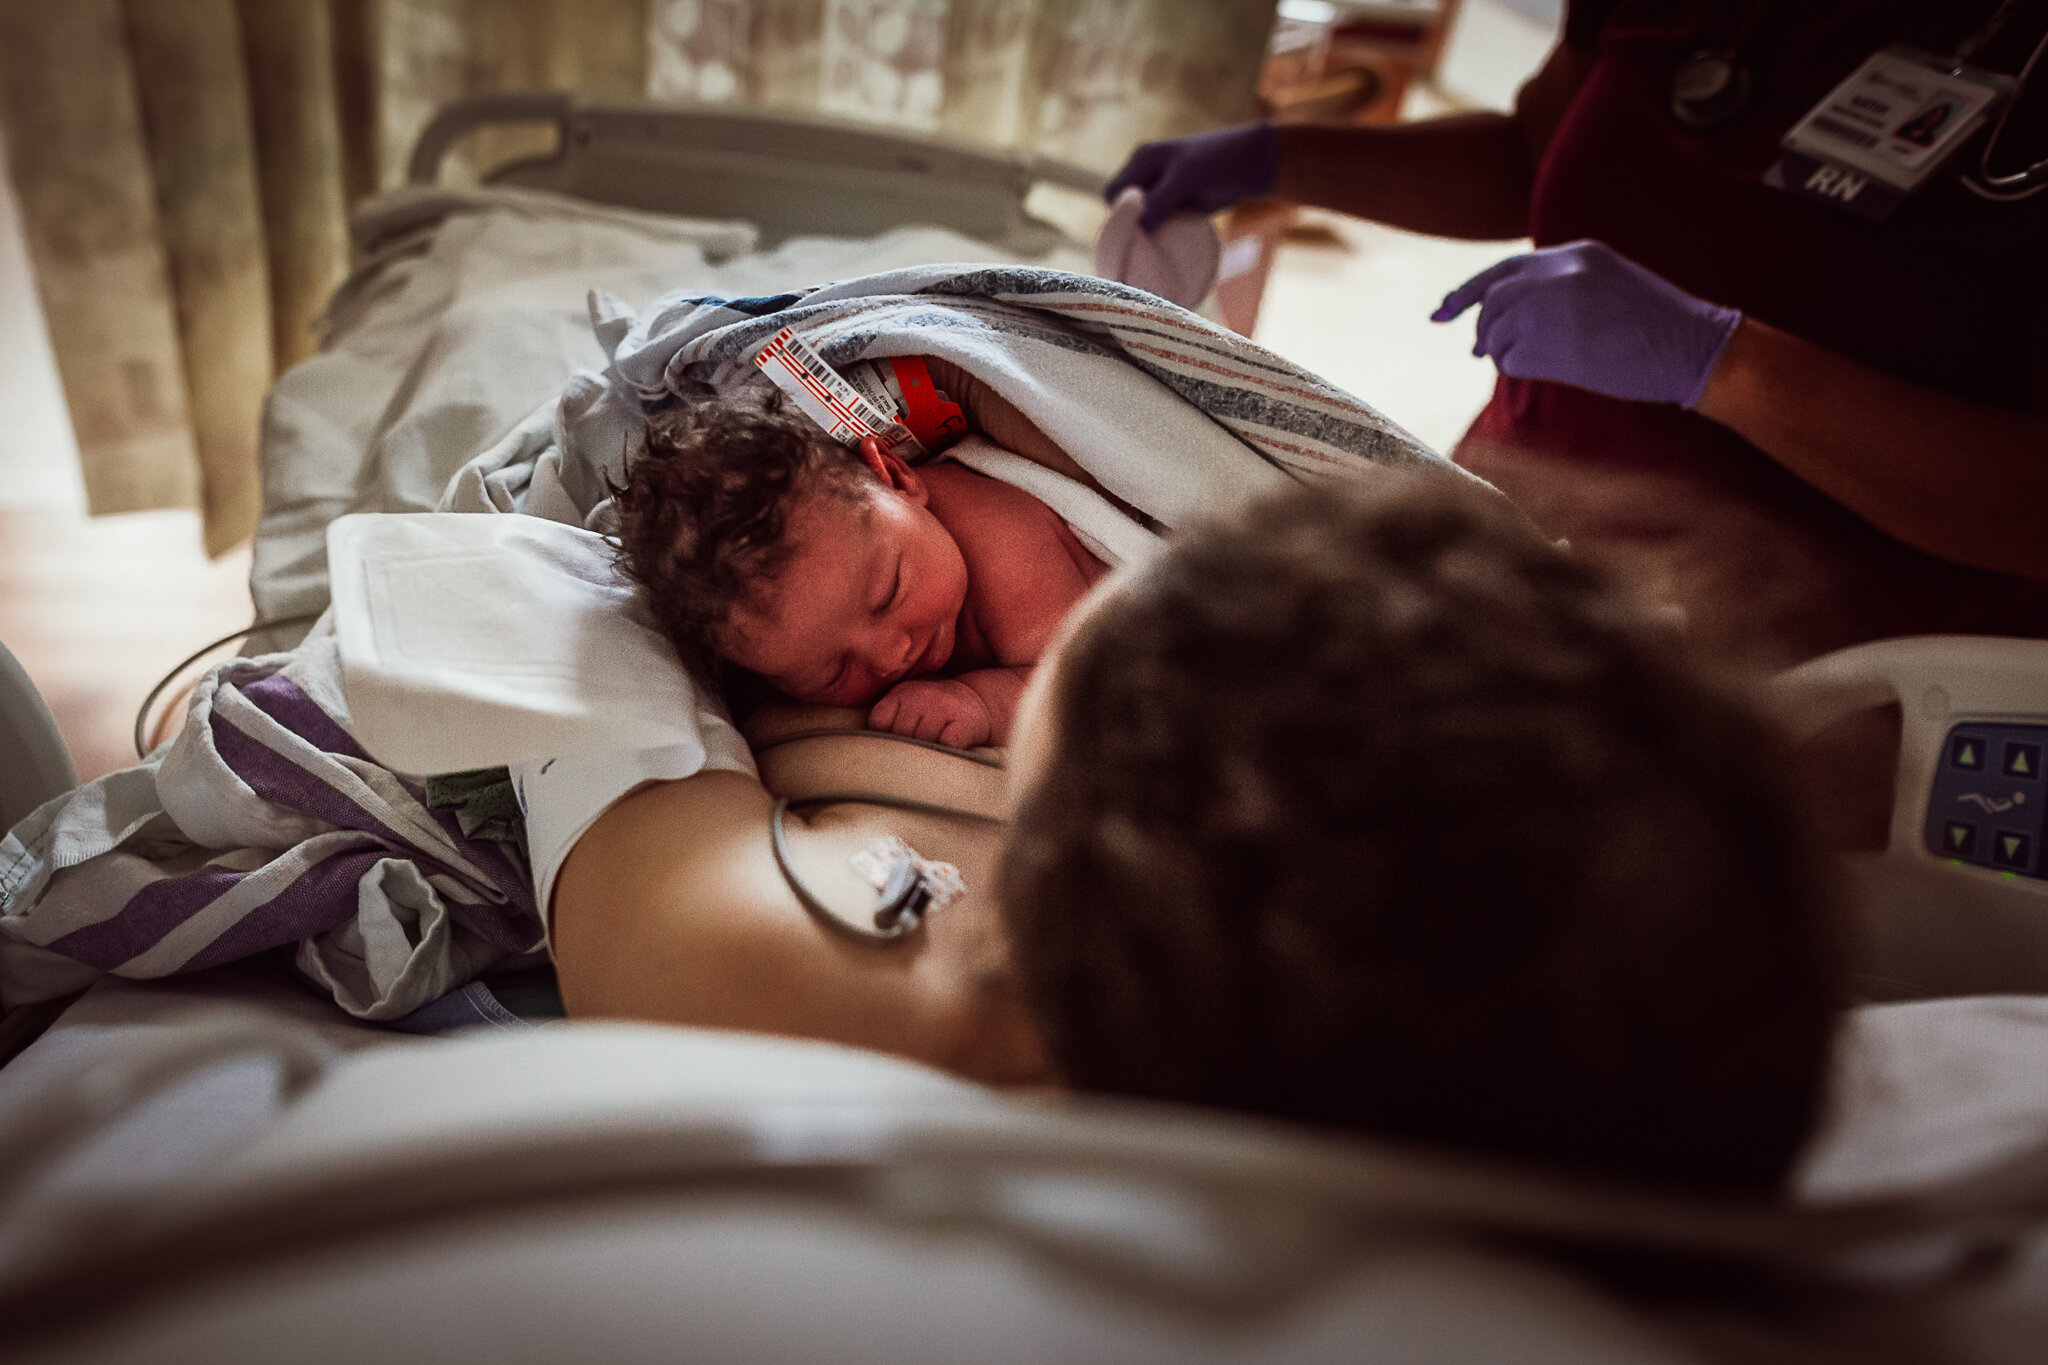 cesarean-birth-postpartum-maggie-williams-3931.jpg